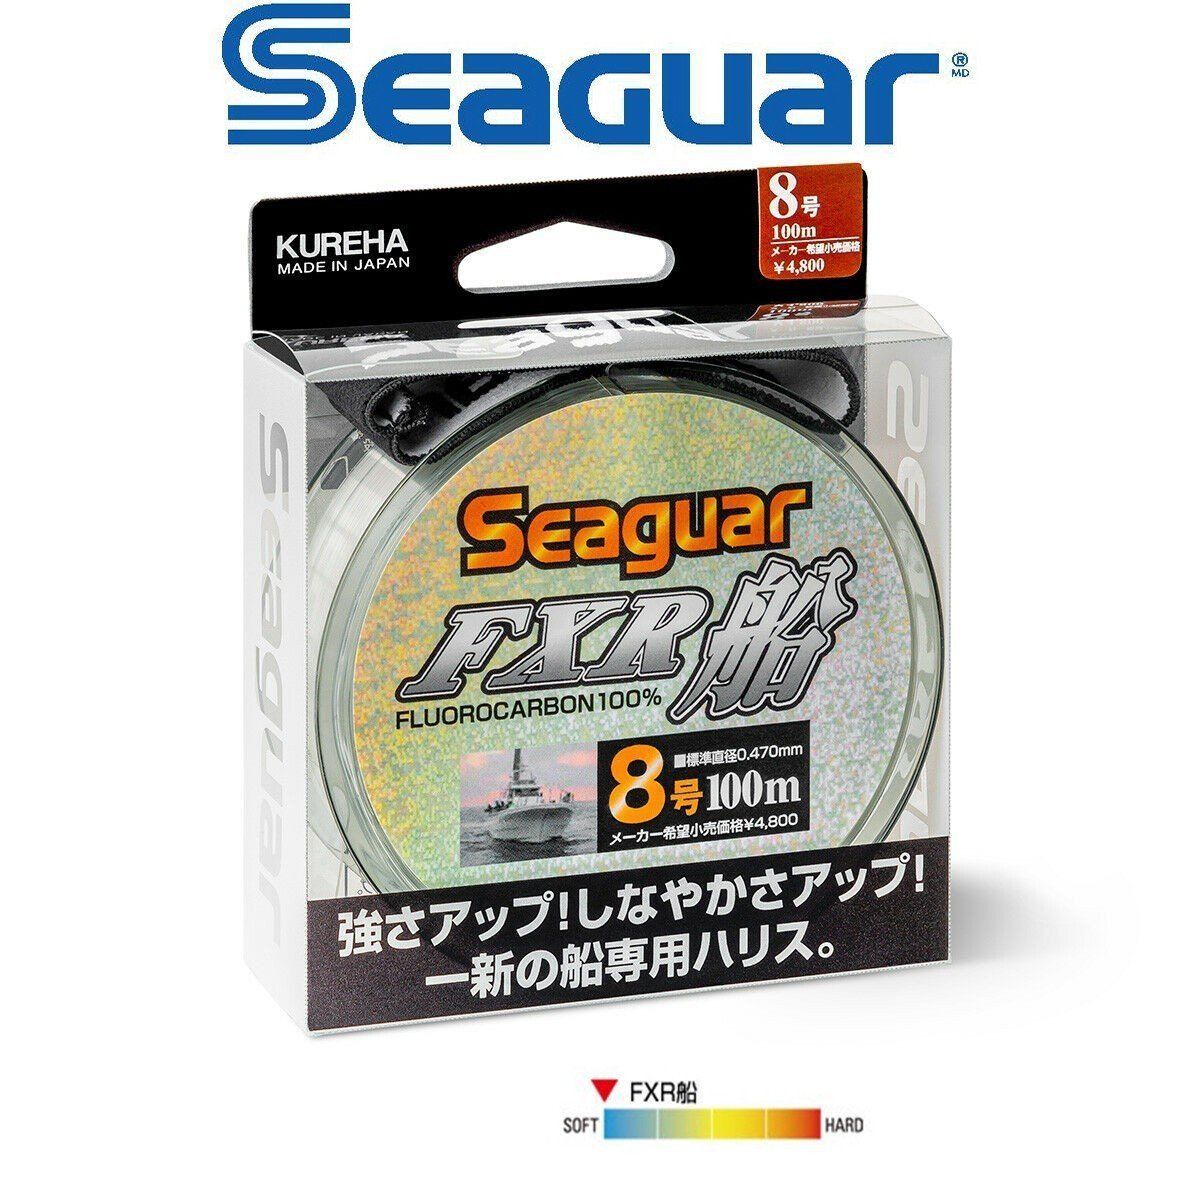 Seaguar FXR Fune %100 Fluoro Carbon Misina 100mt 0.435 mm